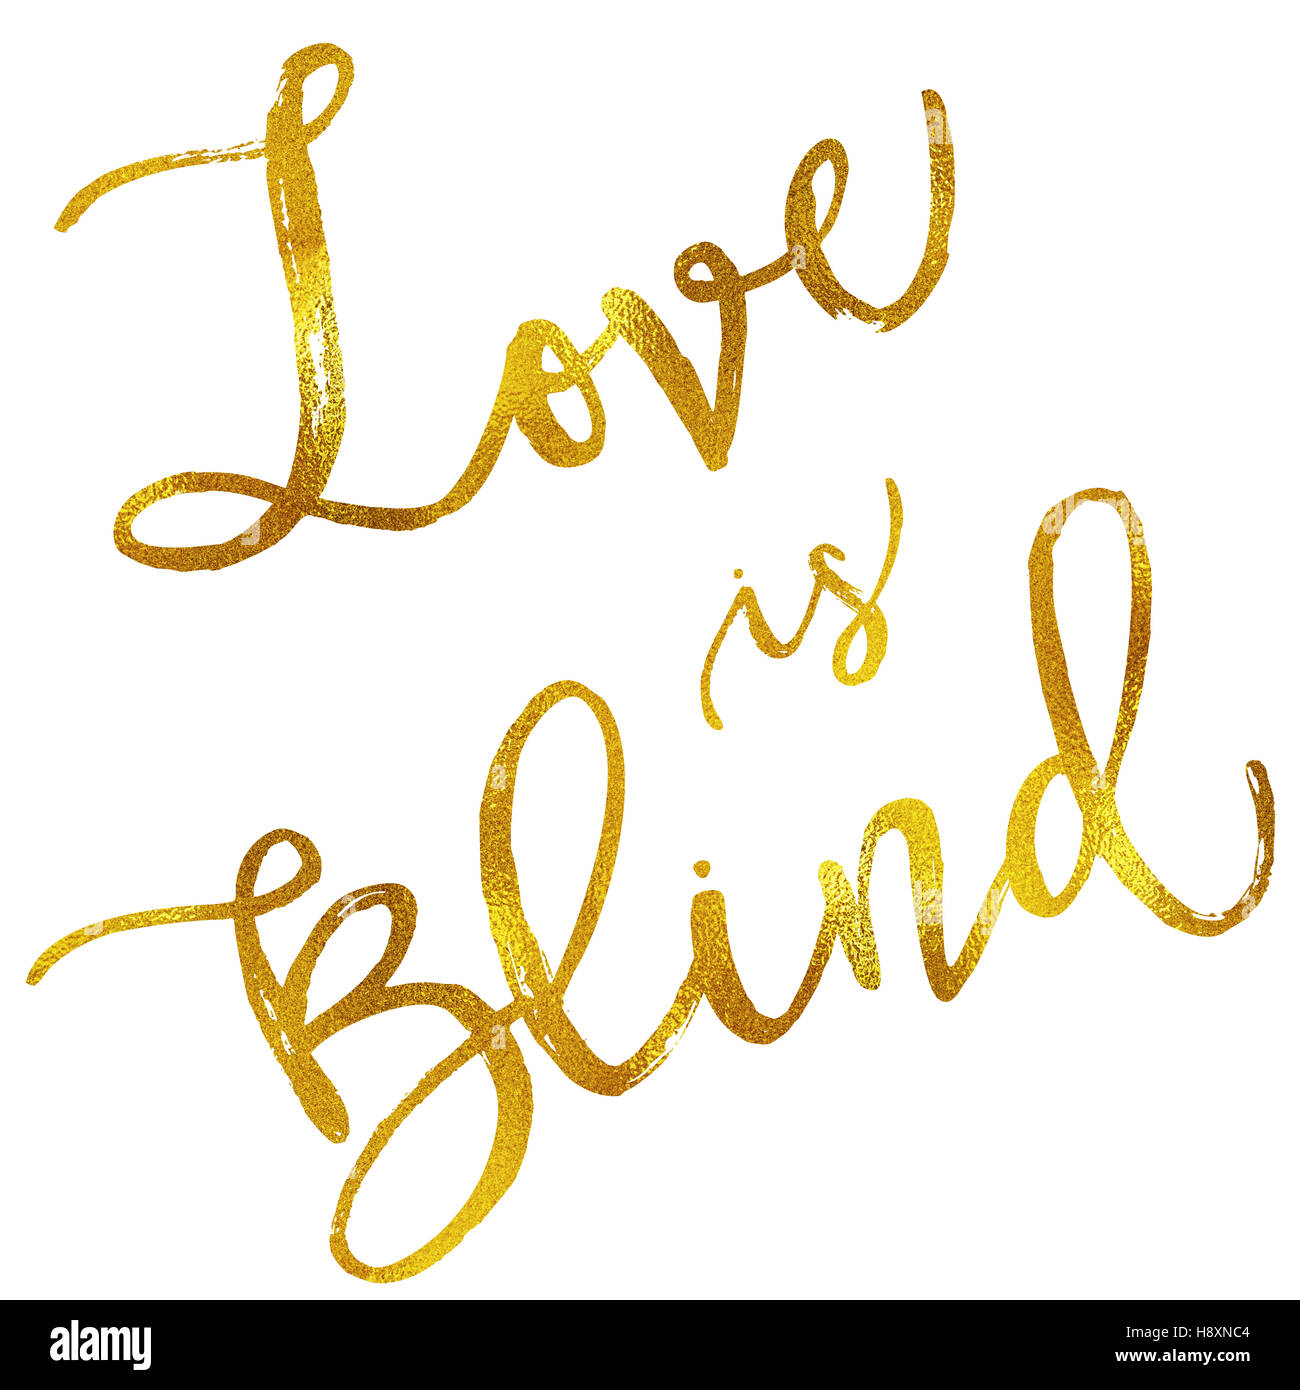 El amor es ciego el oro imitación de lámina metálica aislada cotización motivacional Foto de stock